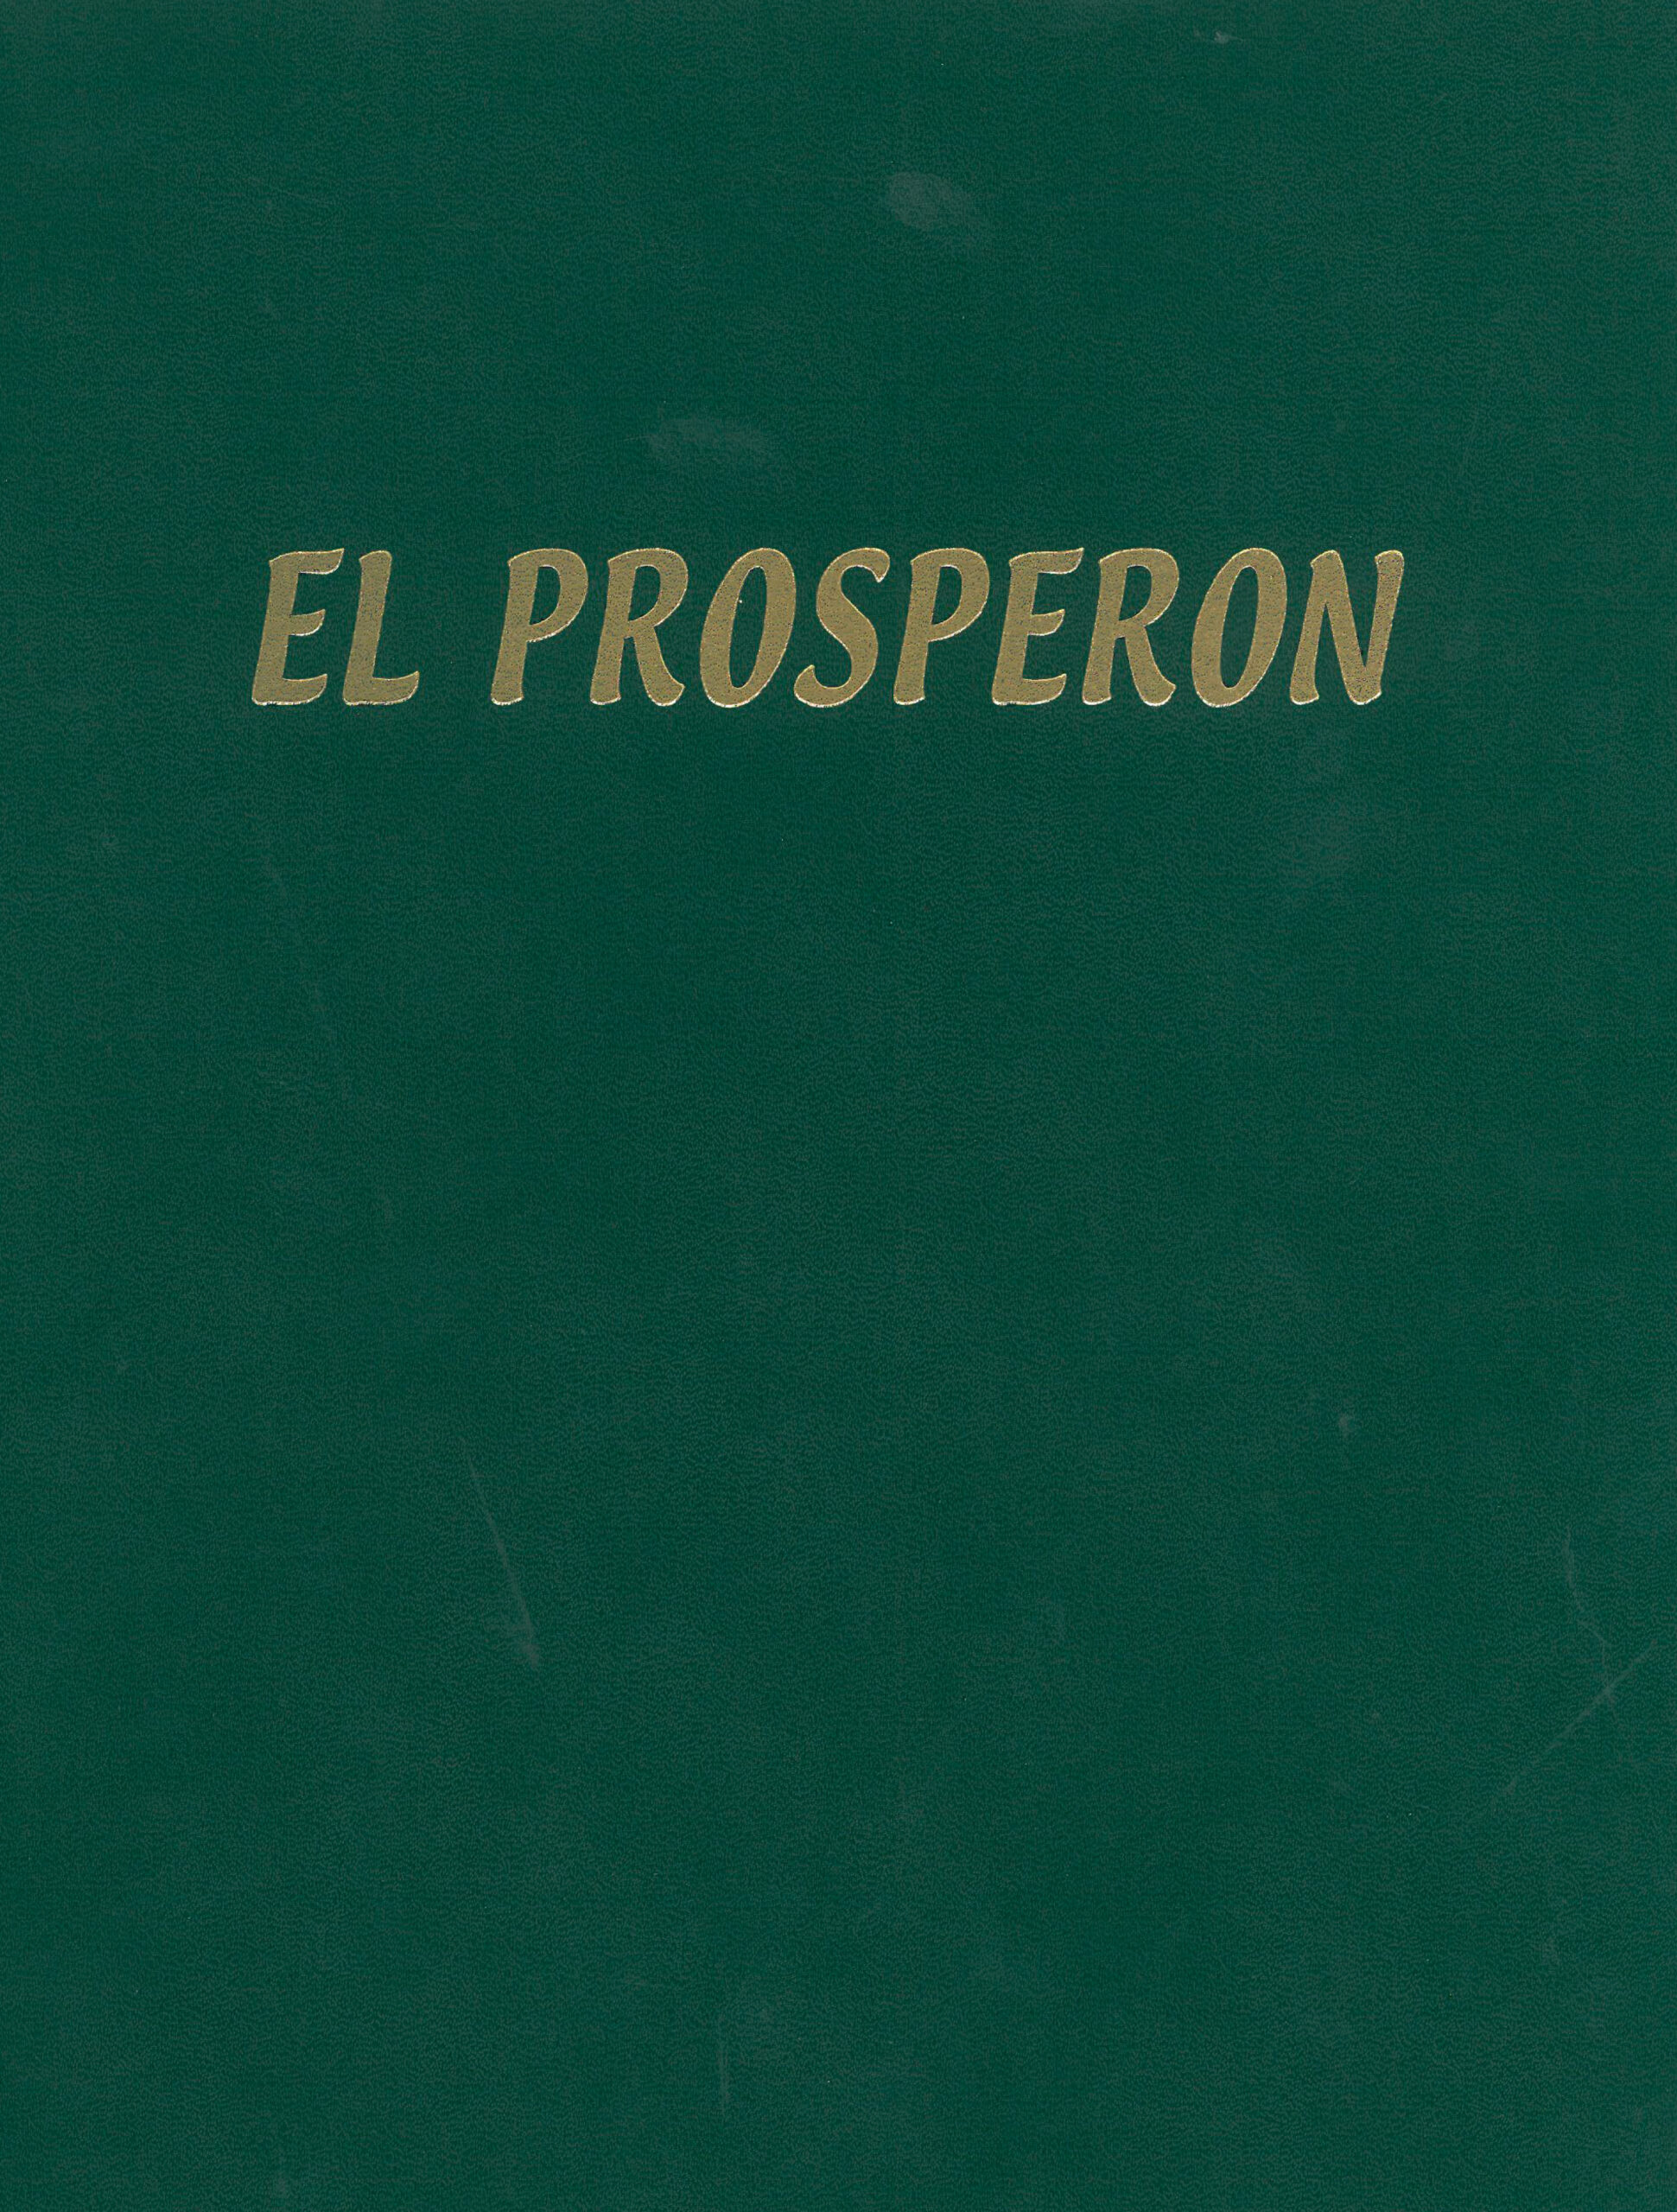 El Prosperon